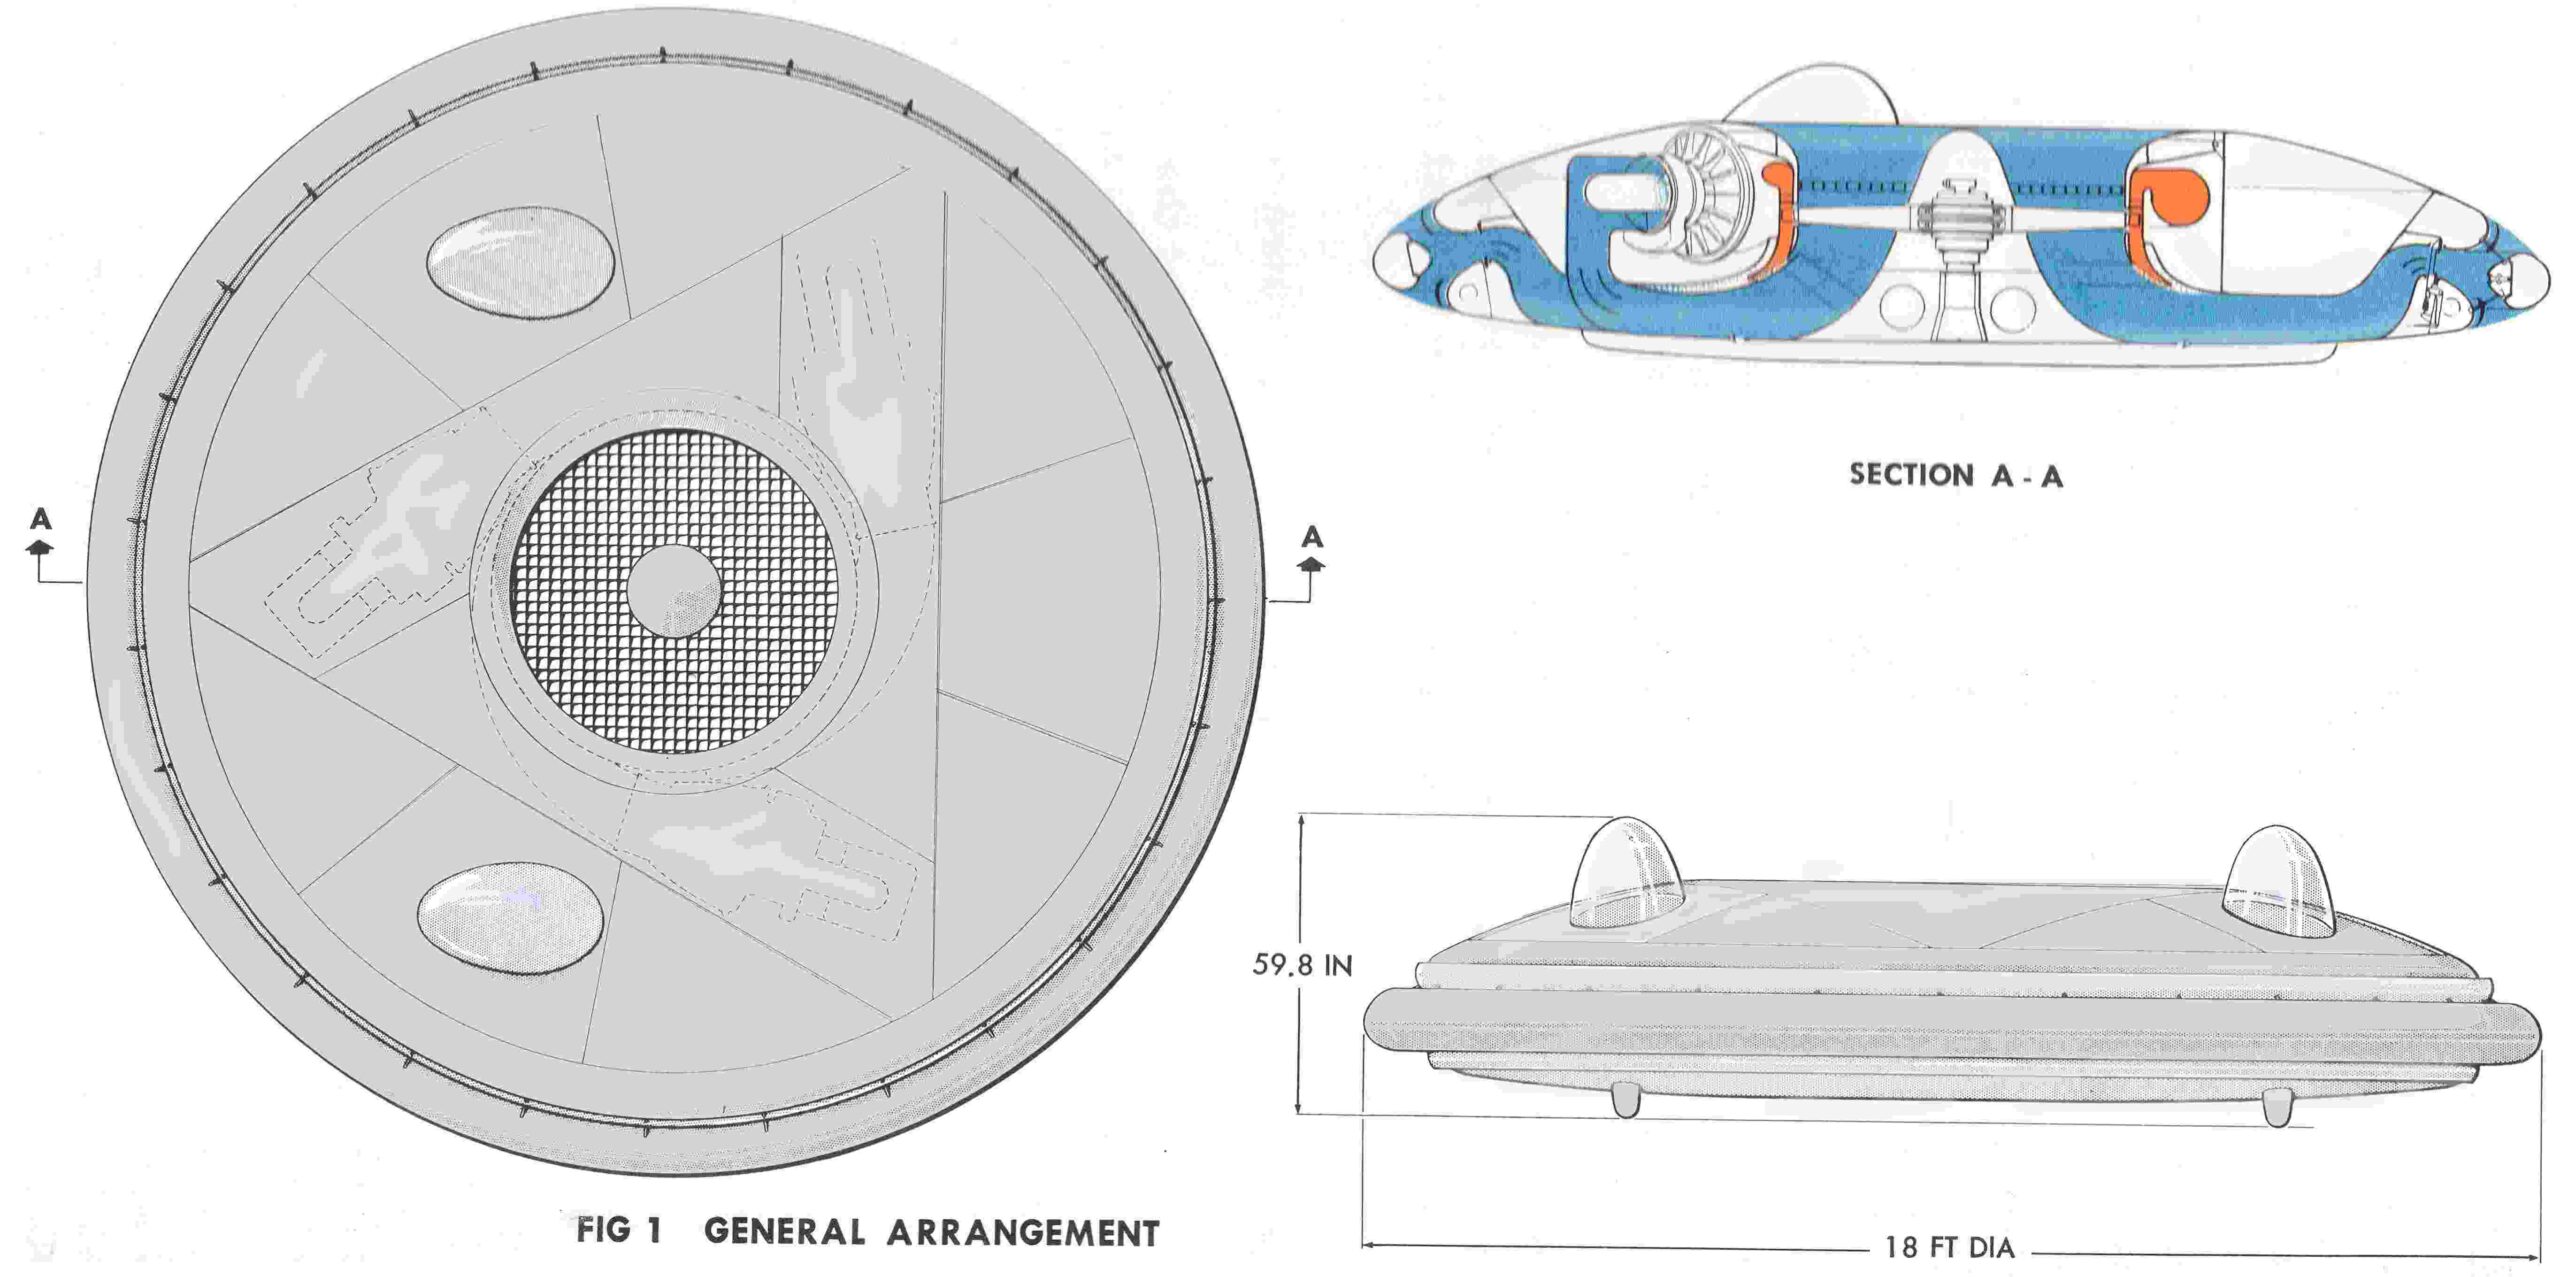 Project Silver Bug: Vakanyatsoshandisa tekinoroji yekunze kugadzira UFO? 1